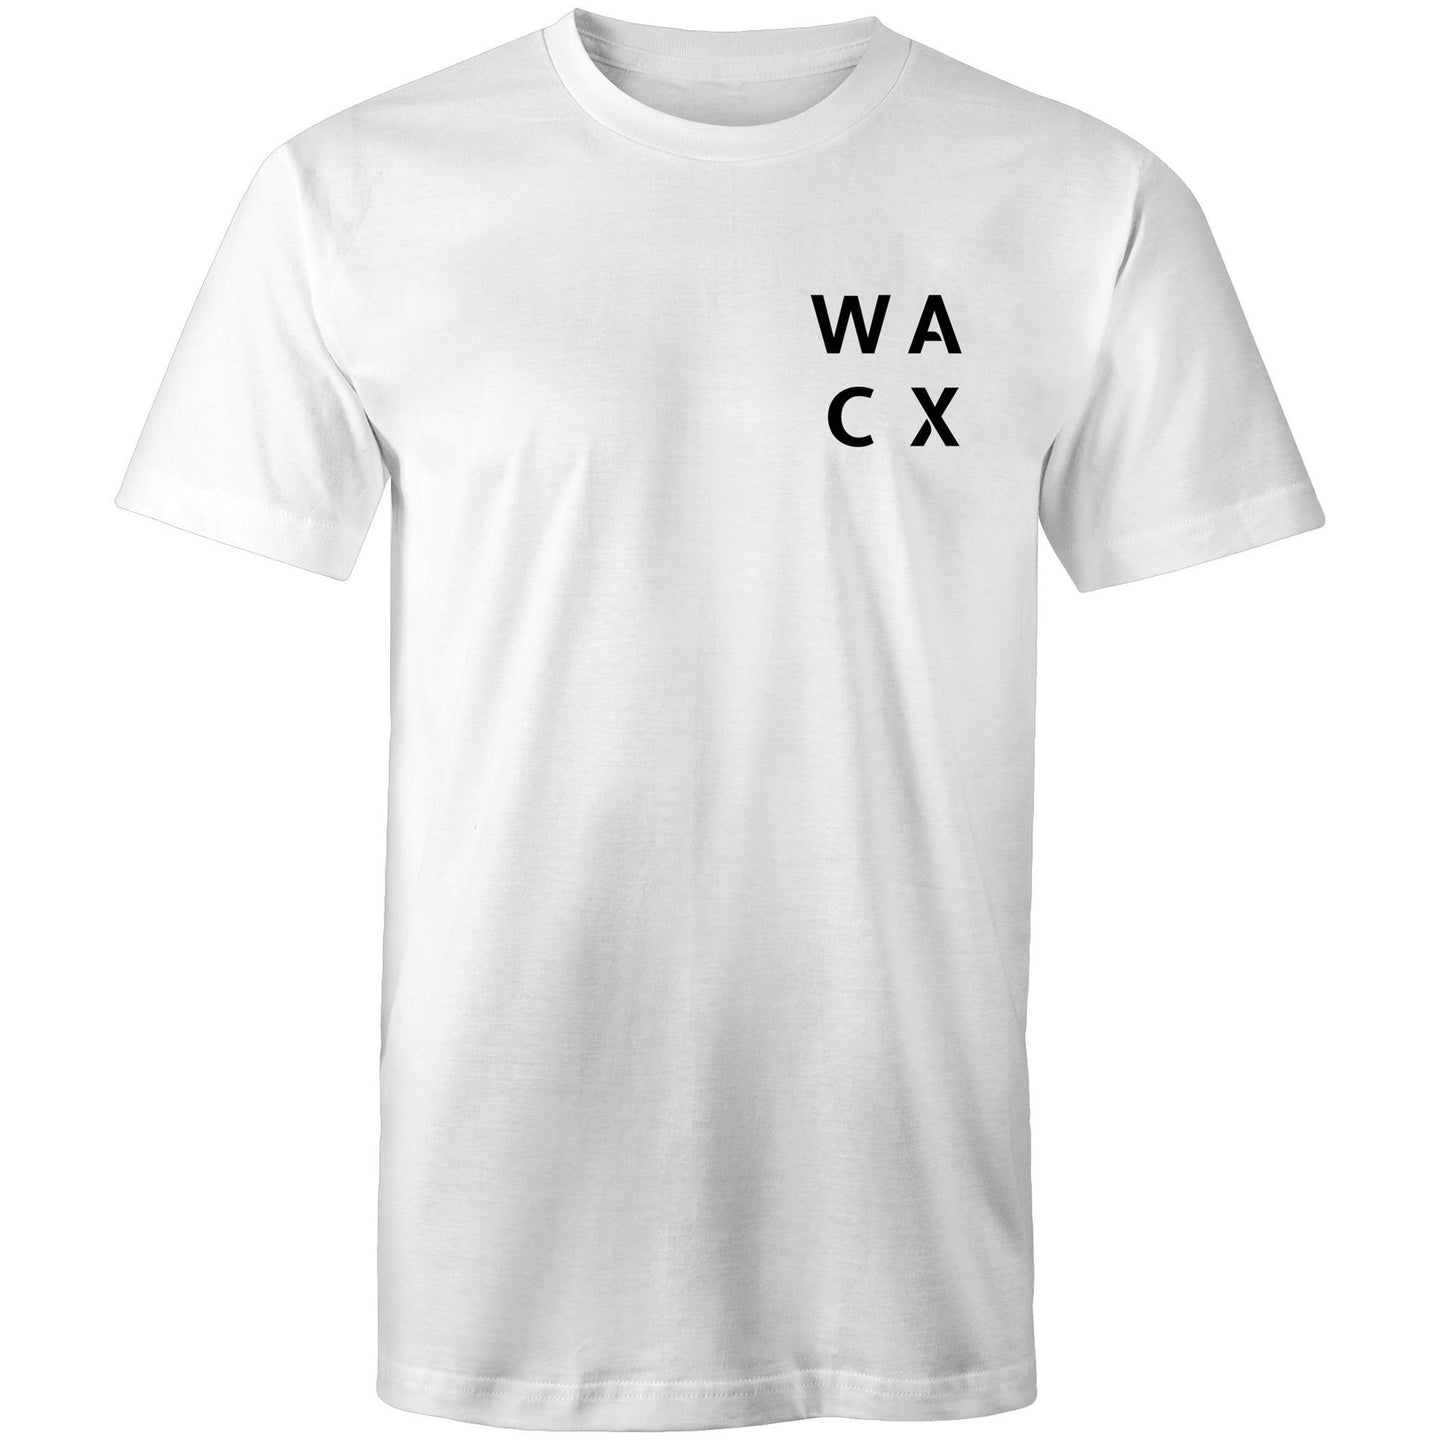 WACX Men's T-Shirt - White